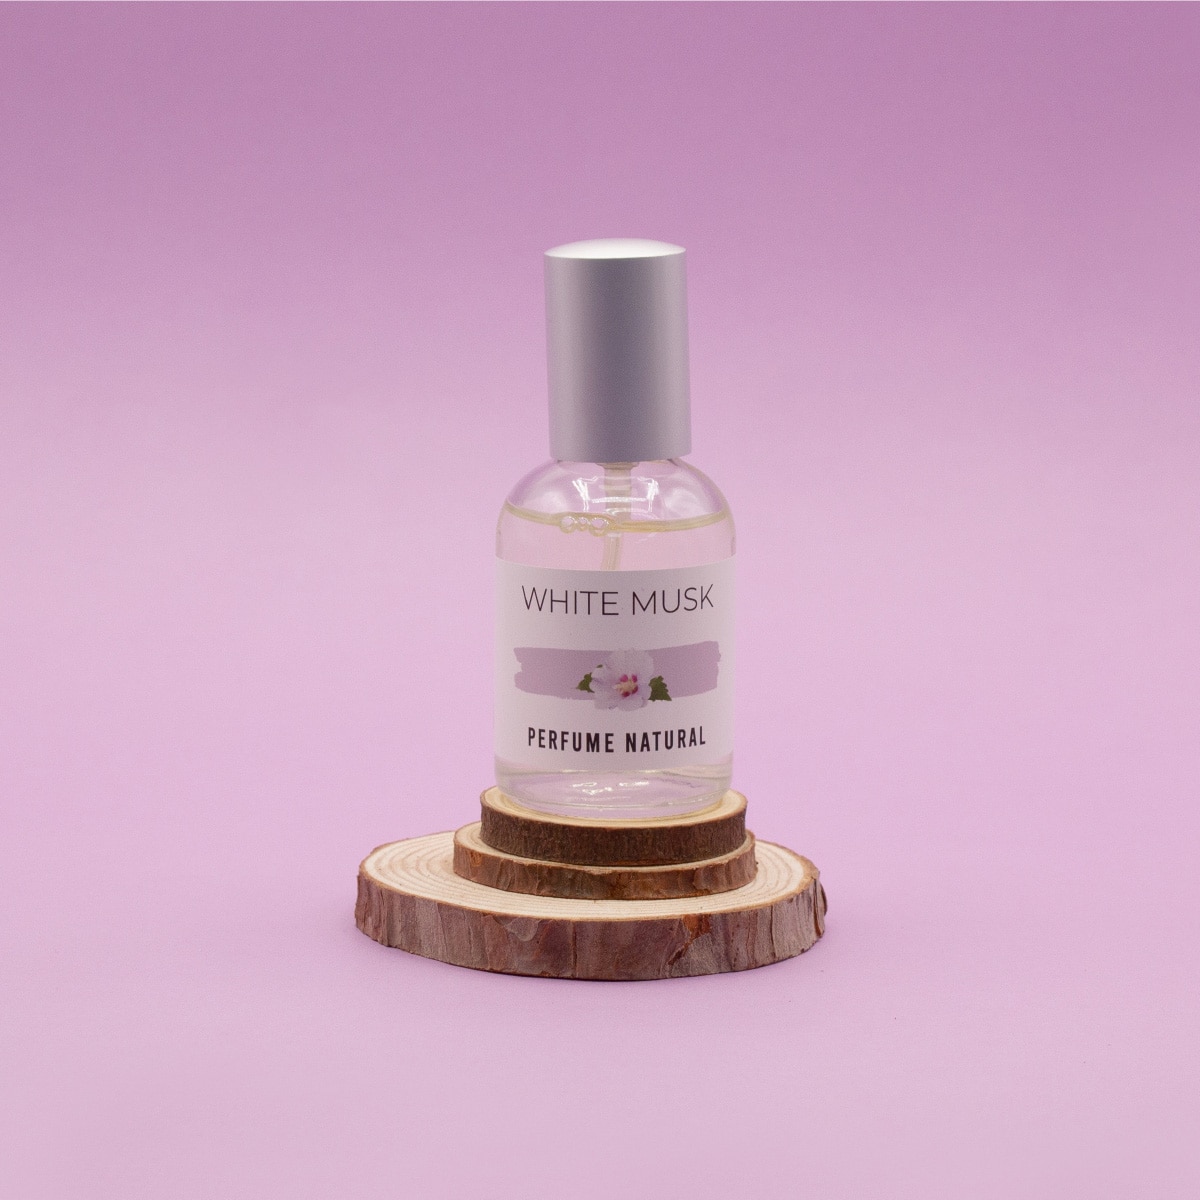 Perfume white musk 01